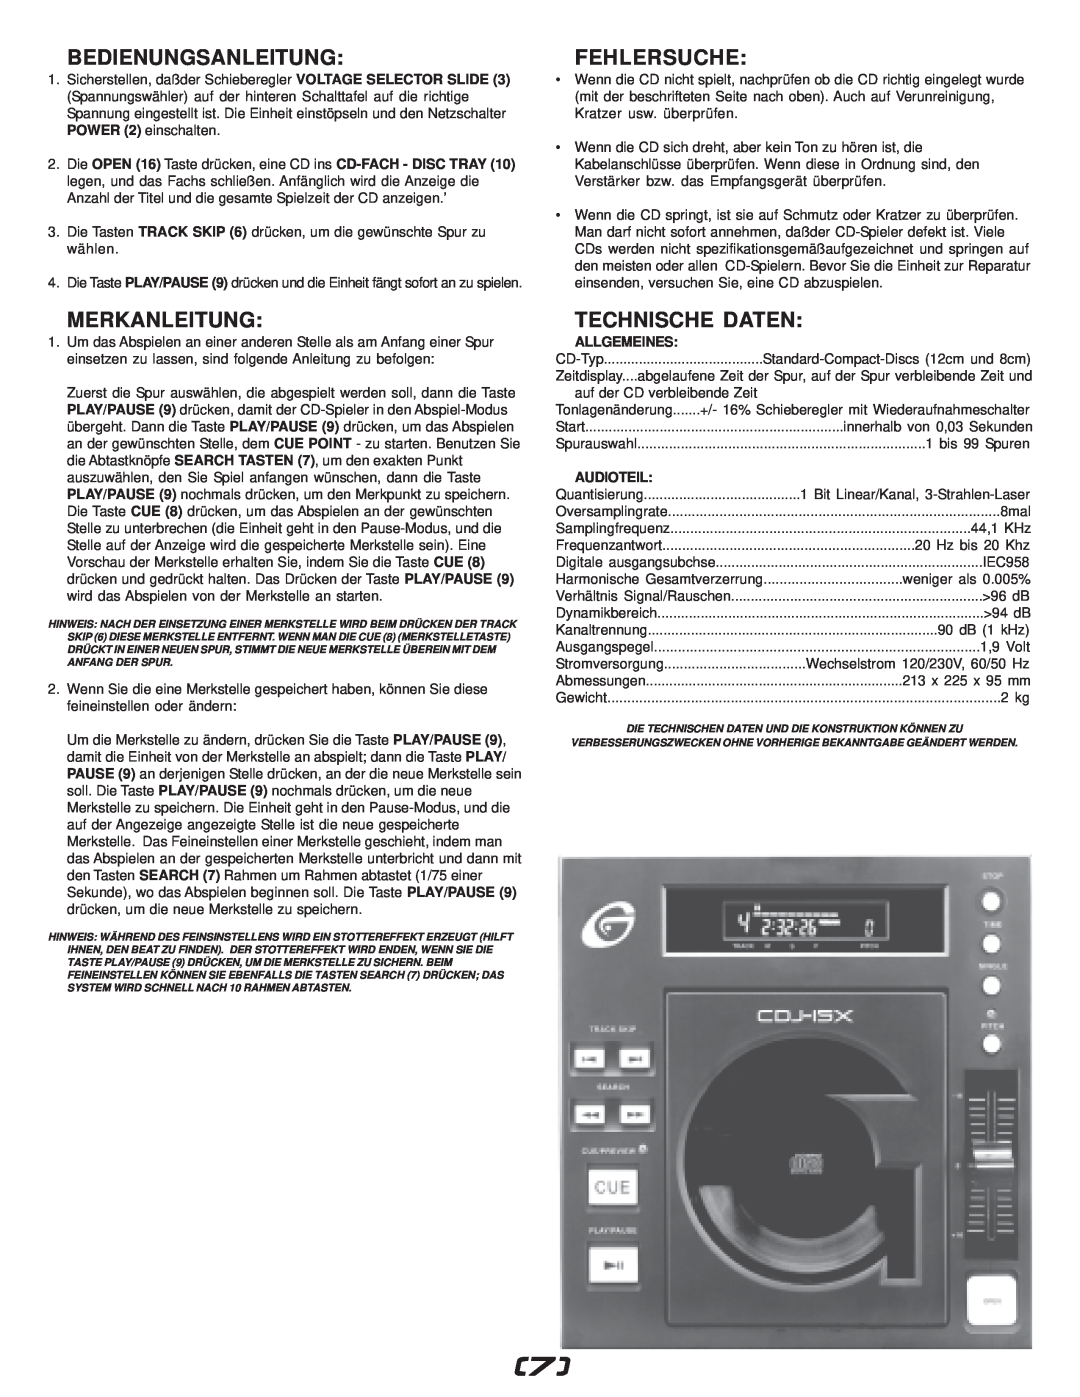 Gemini CDJ-15X manual Bedienungsanleitung, Merkanleitung, Fehlersuche, Technische Daten, Allgemeines, Audioteil 